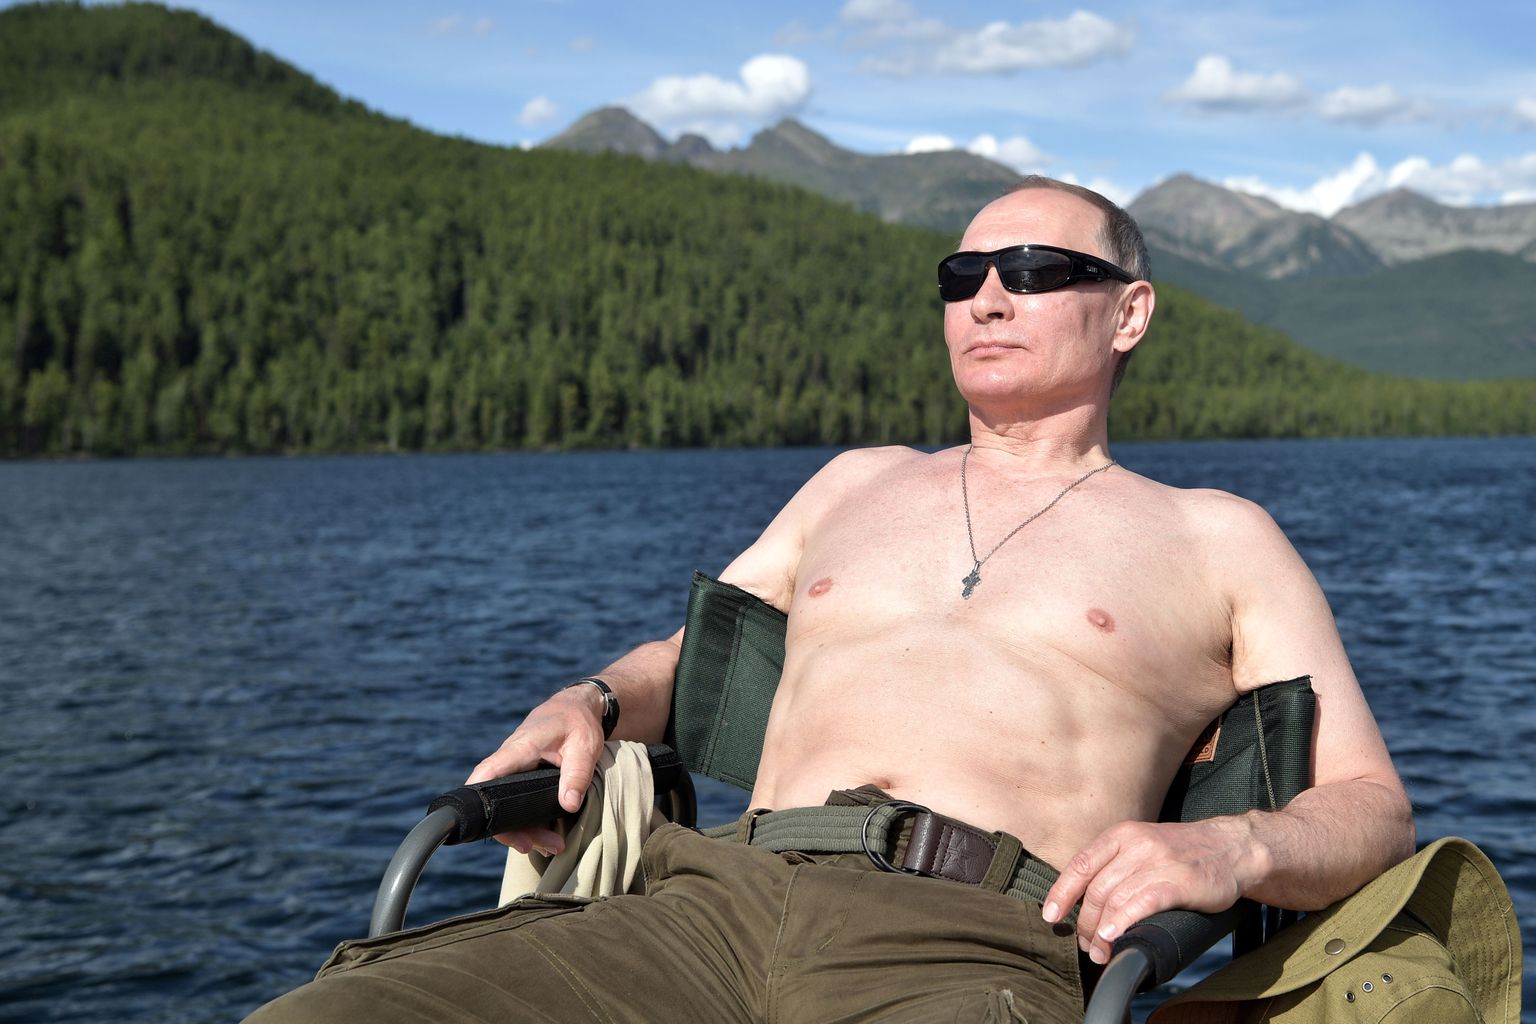 Venemaa president Vladimir Putin puhkamas 2017 Siberis Tõva Vabariigis